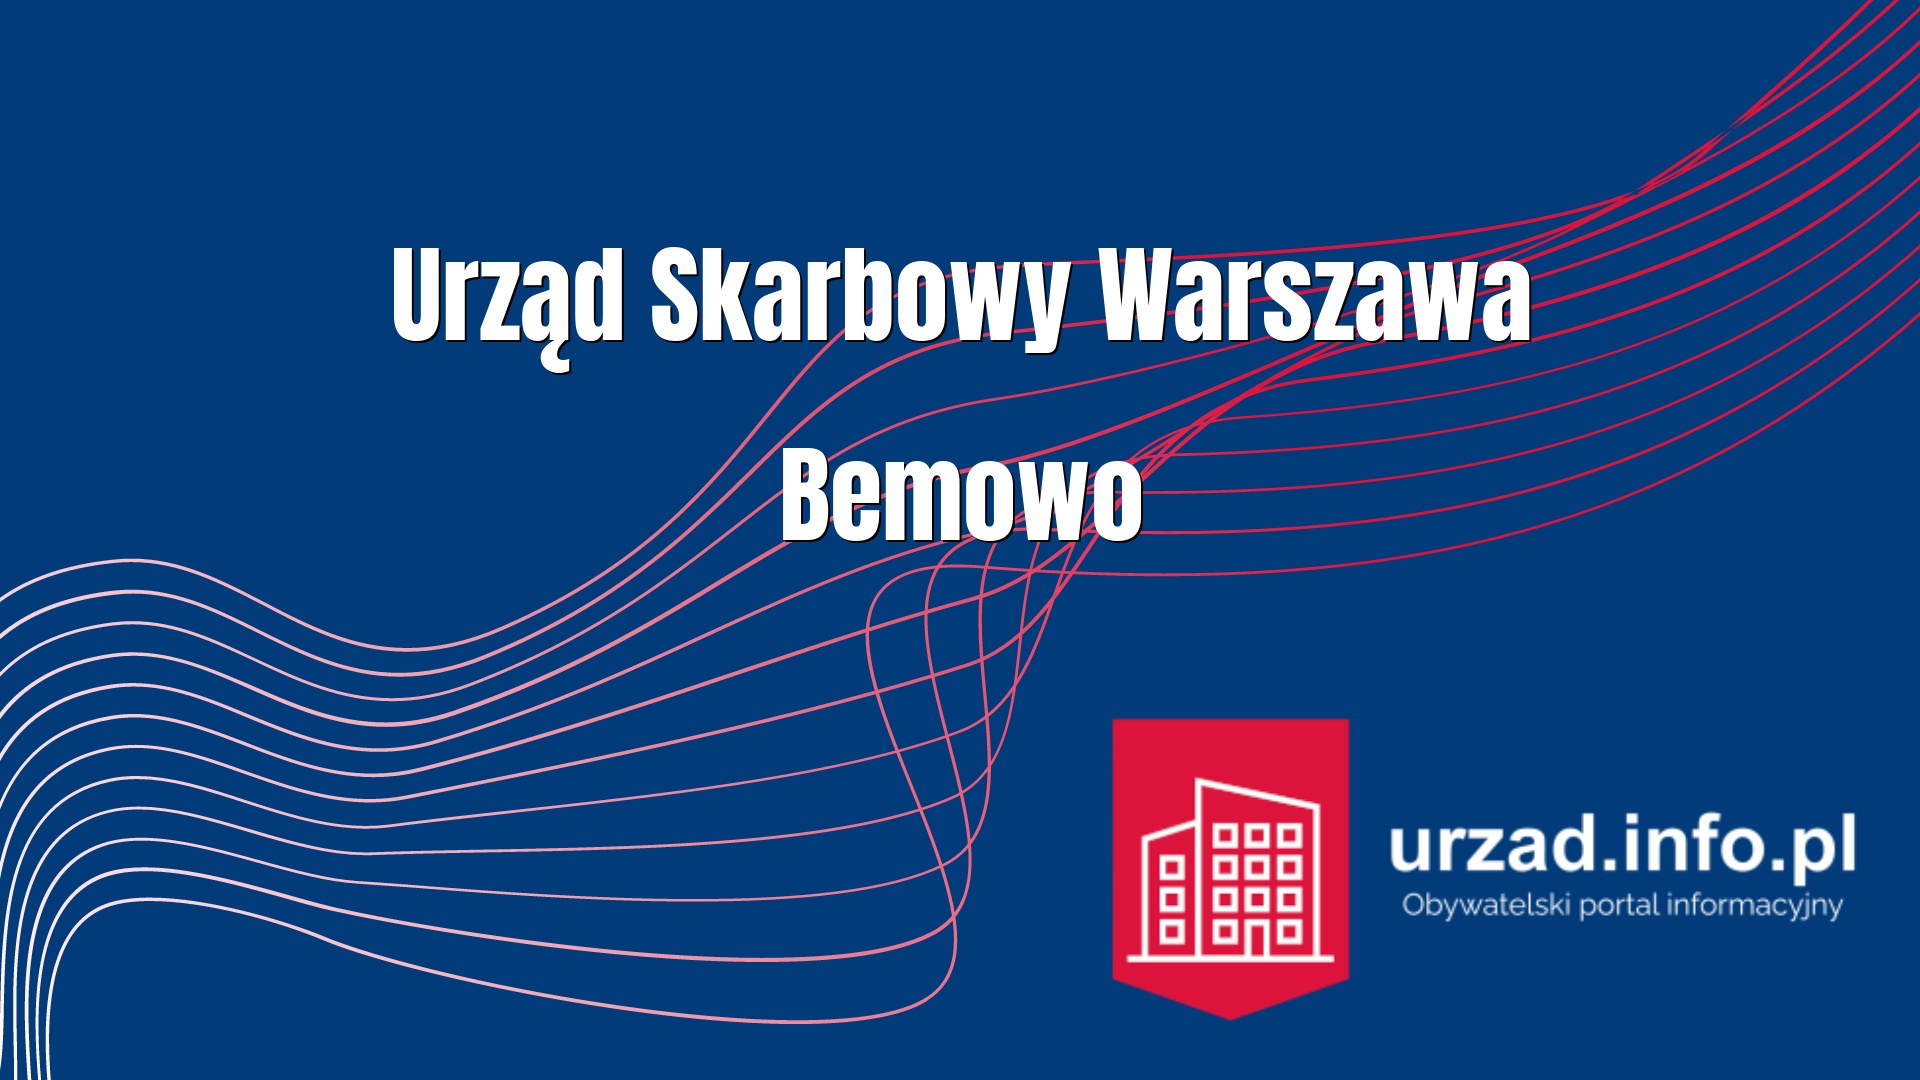 Urząd Skarbowy Warszawa Bemowo